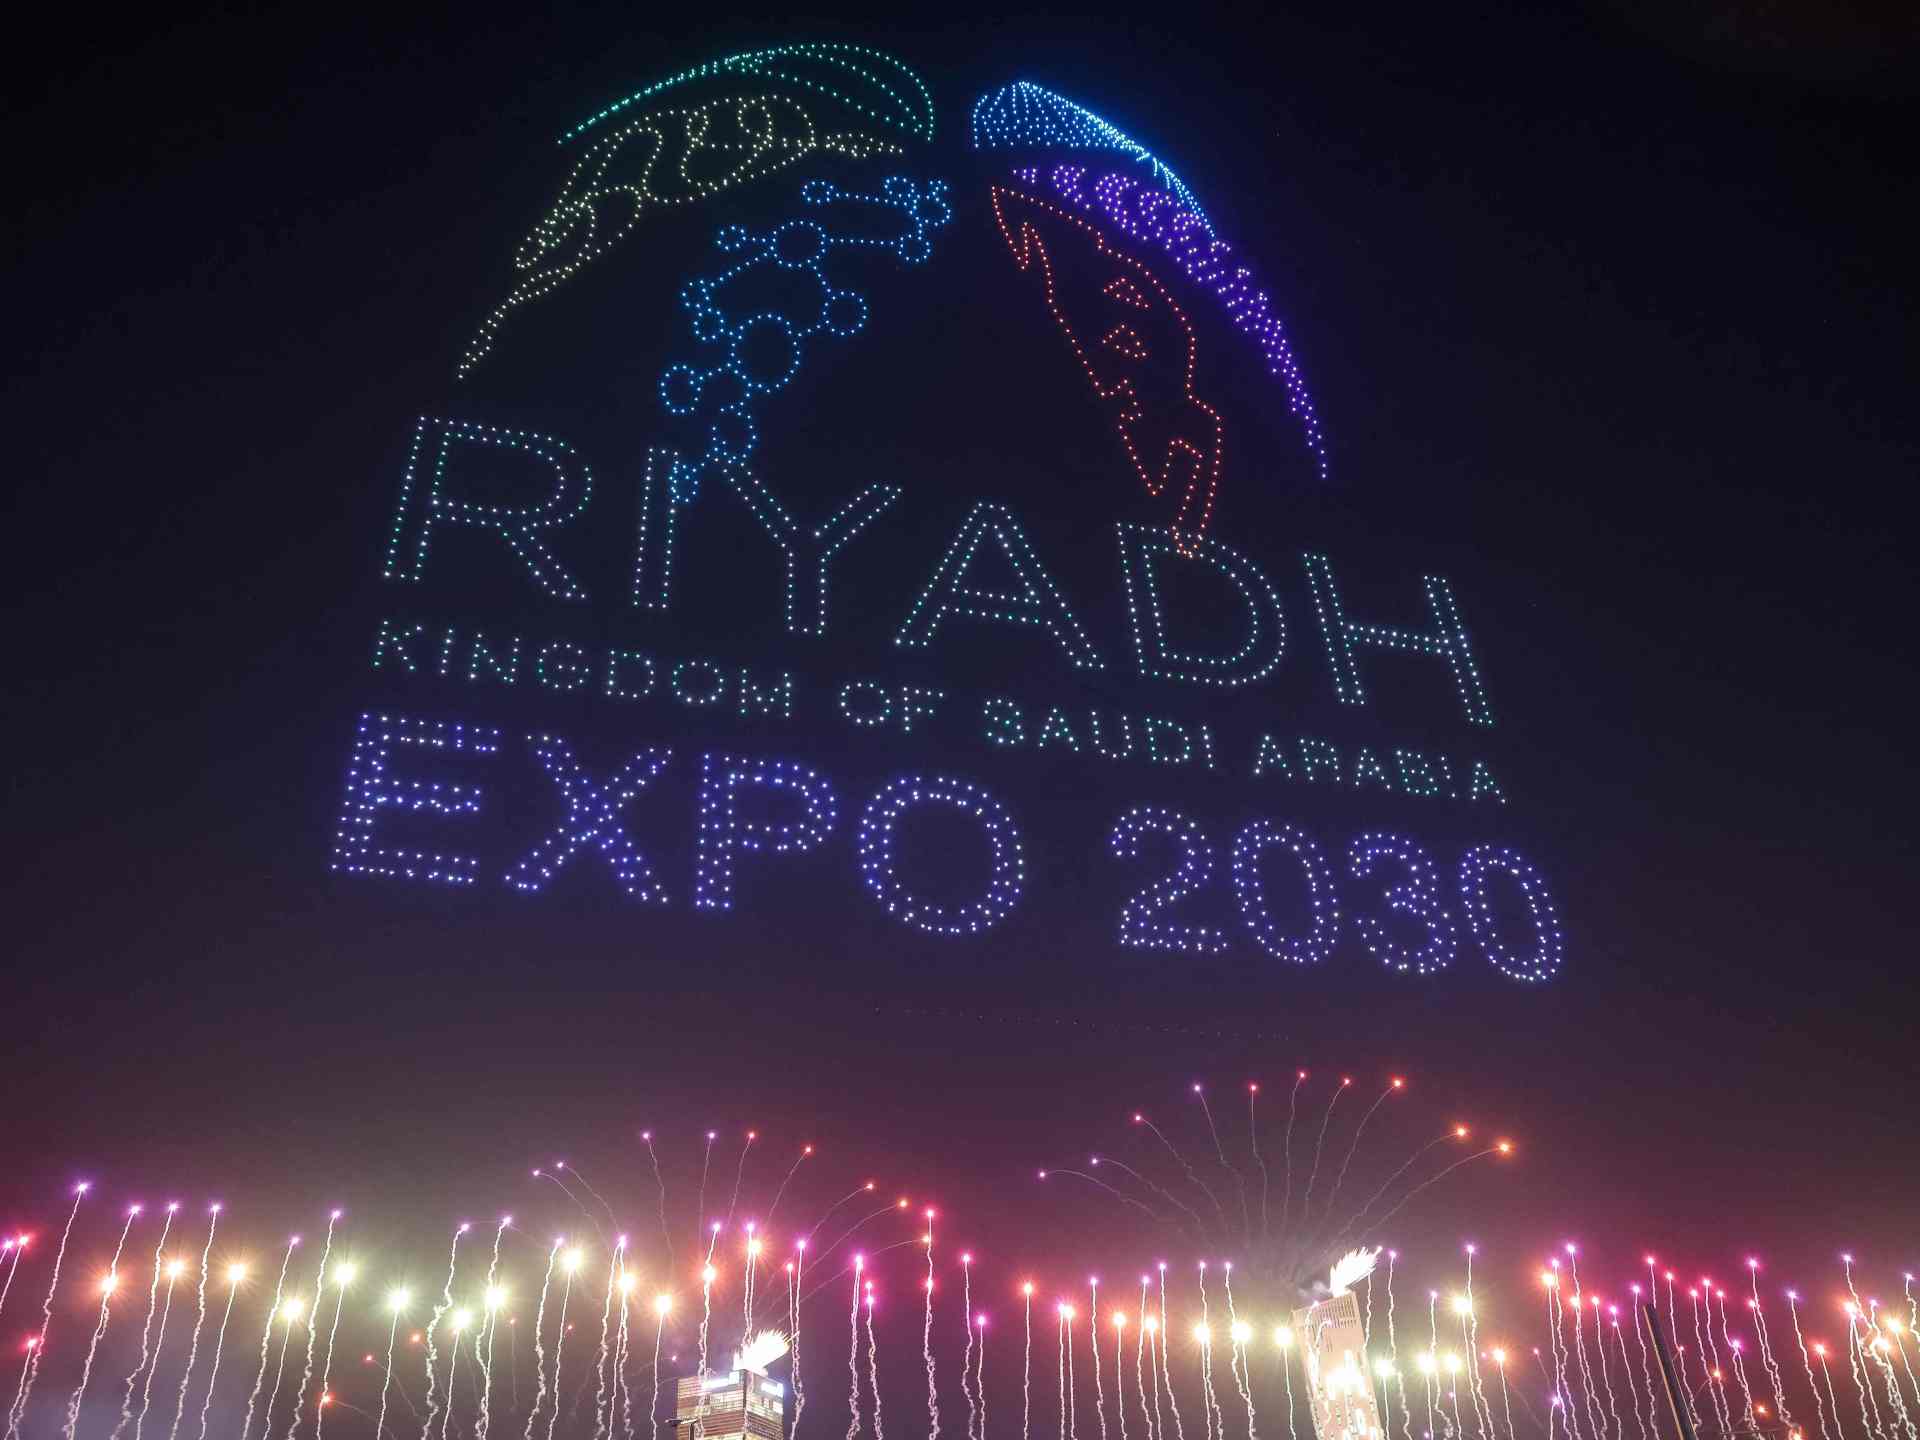 السعودية تنتزع استضافة إكسبو 2030 من إيطاليا وكوريا الجنوبية | أخبار – البوكس نيوز